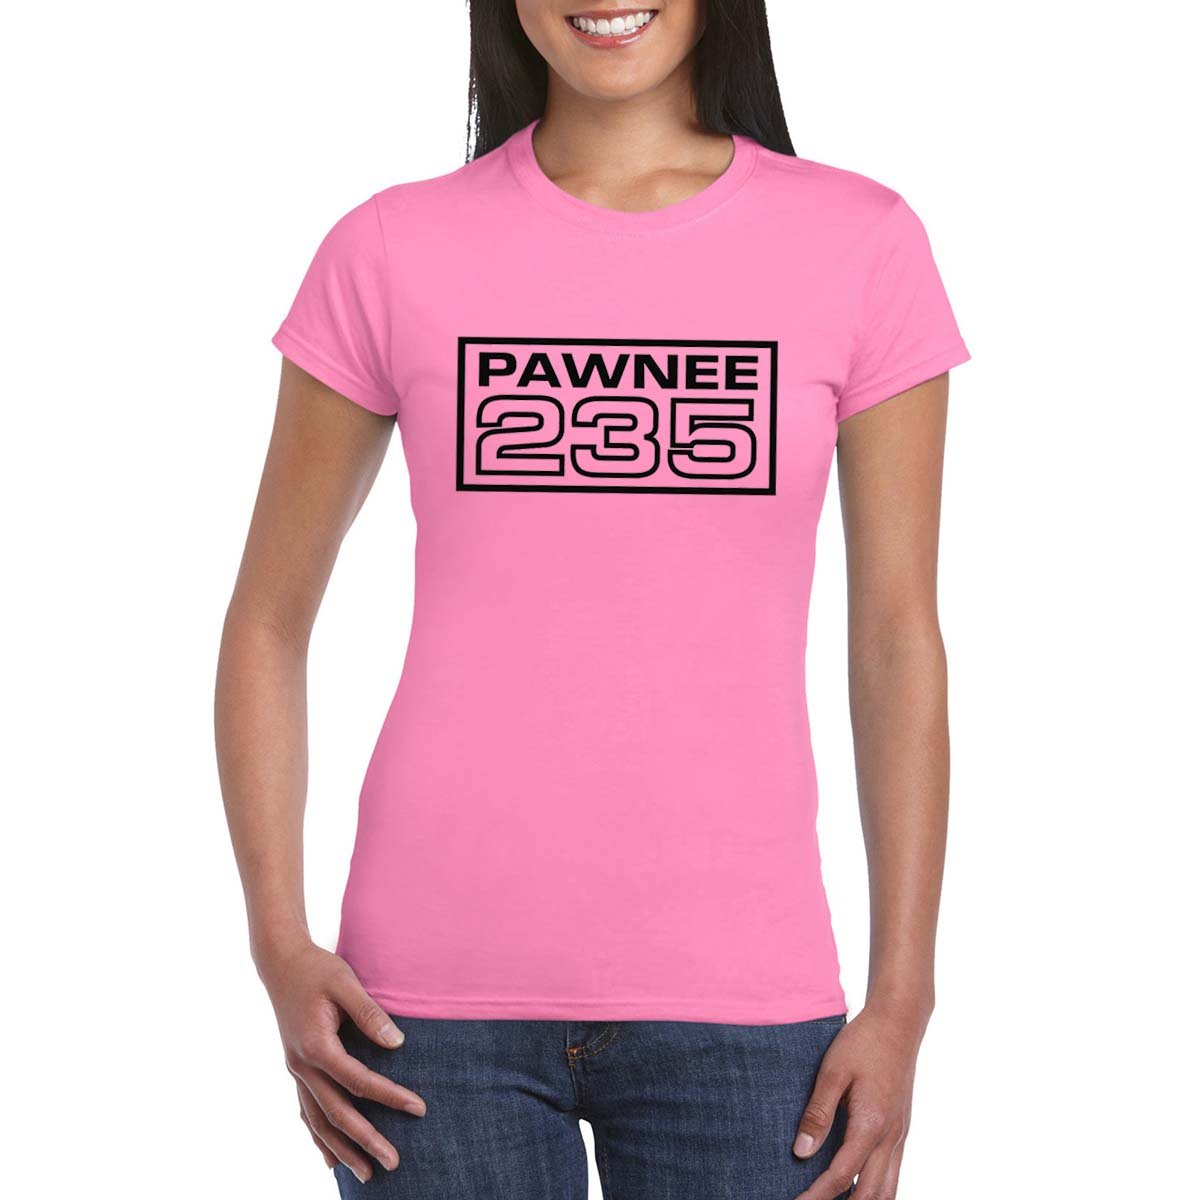 PAWNEE 235 Women's T-Shirt